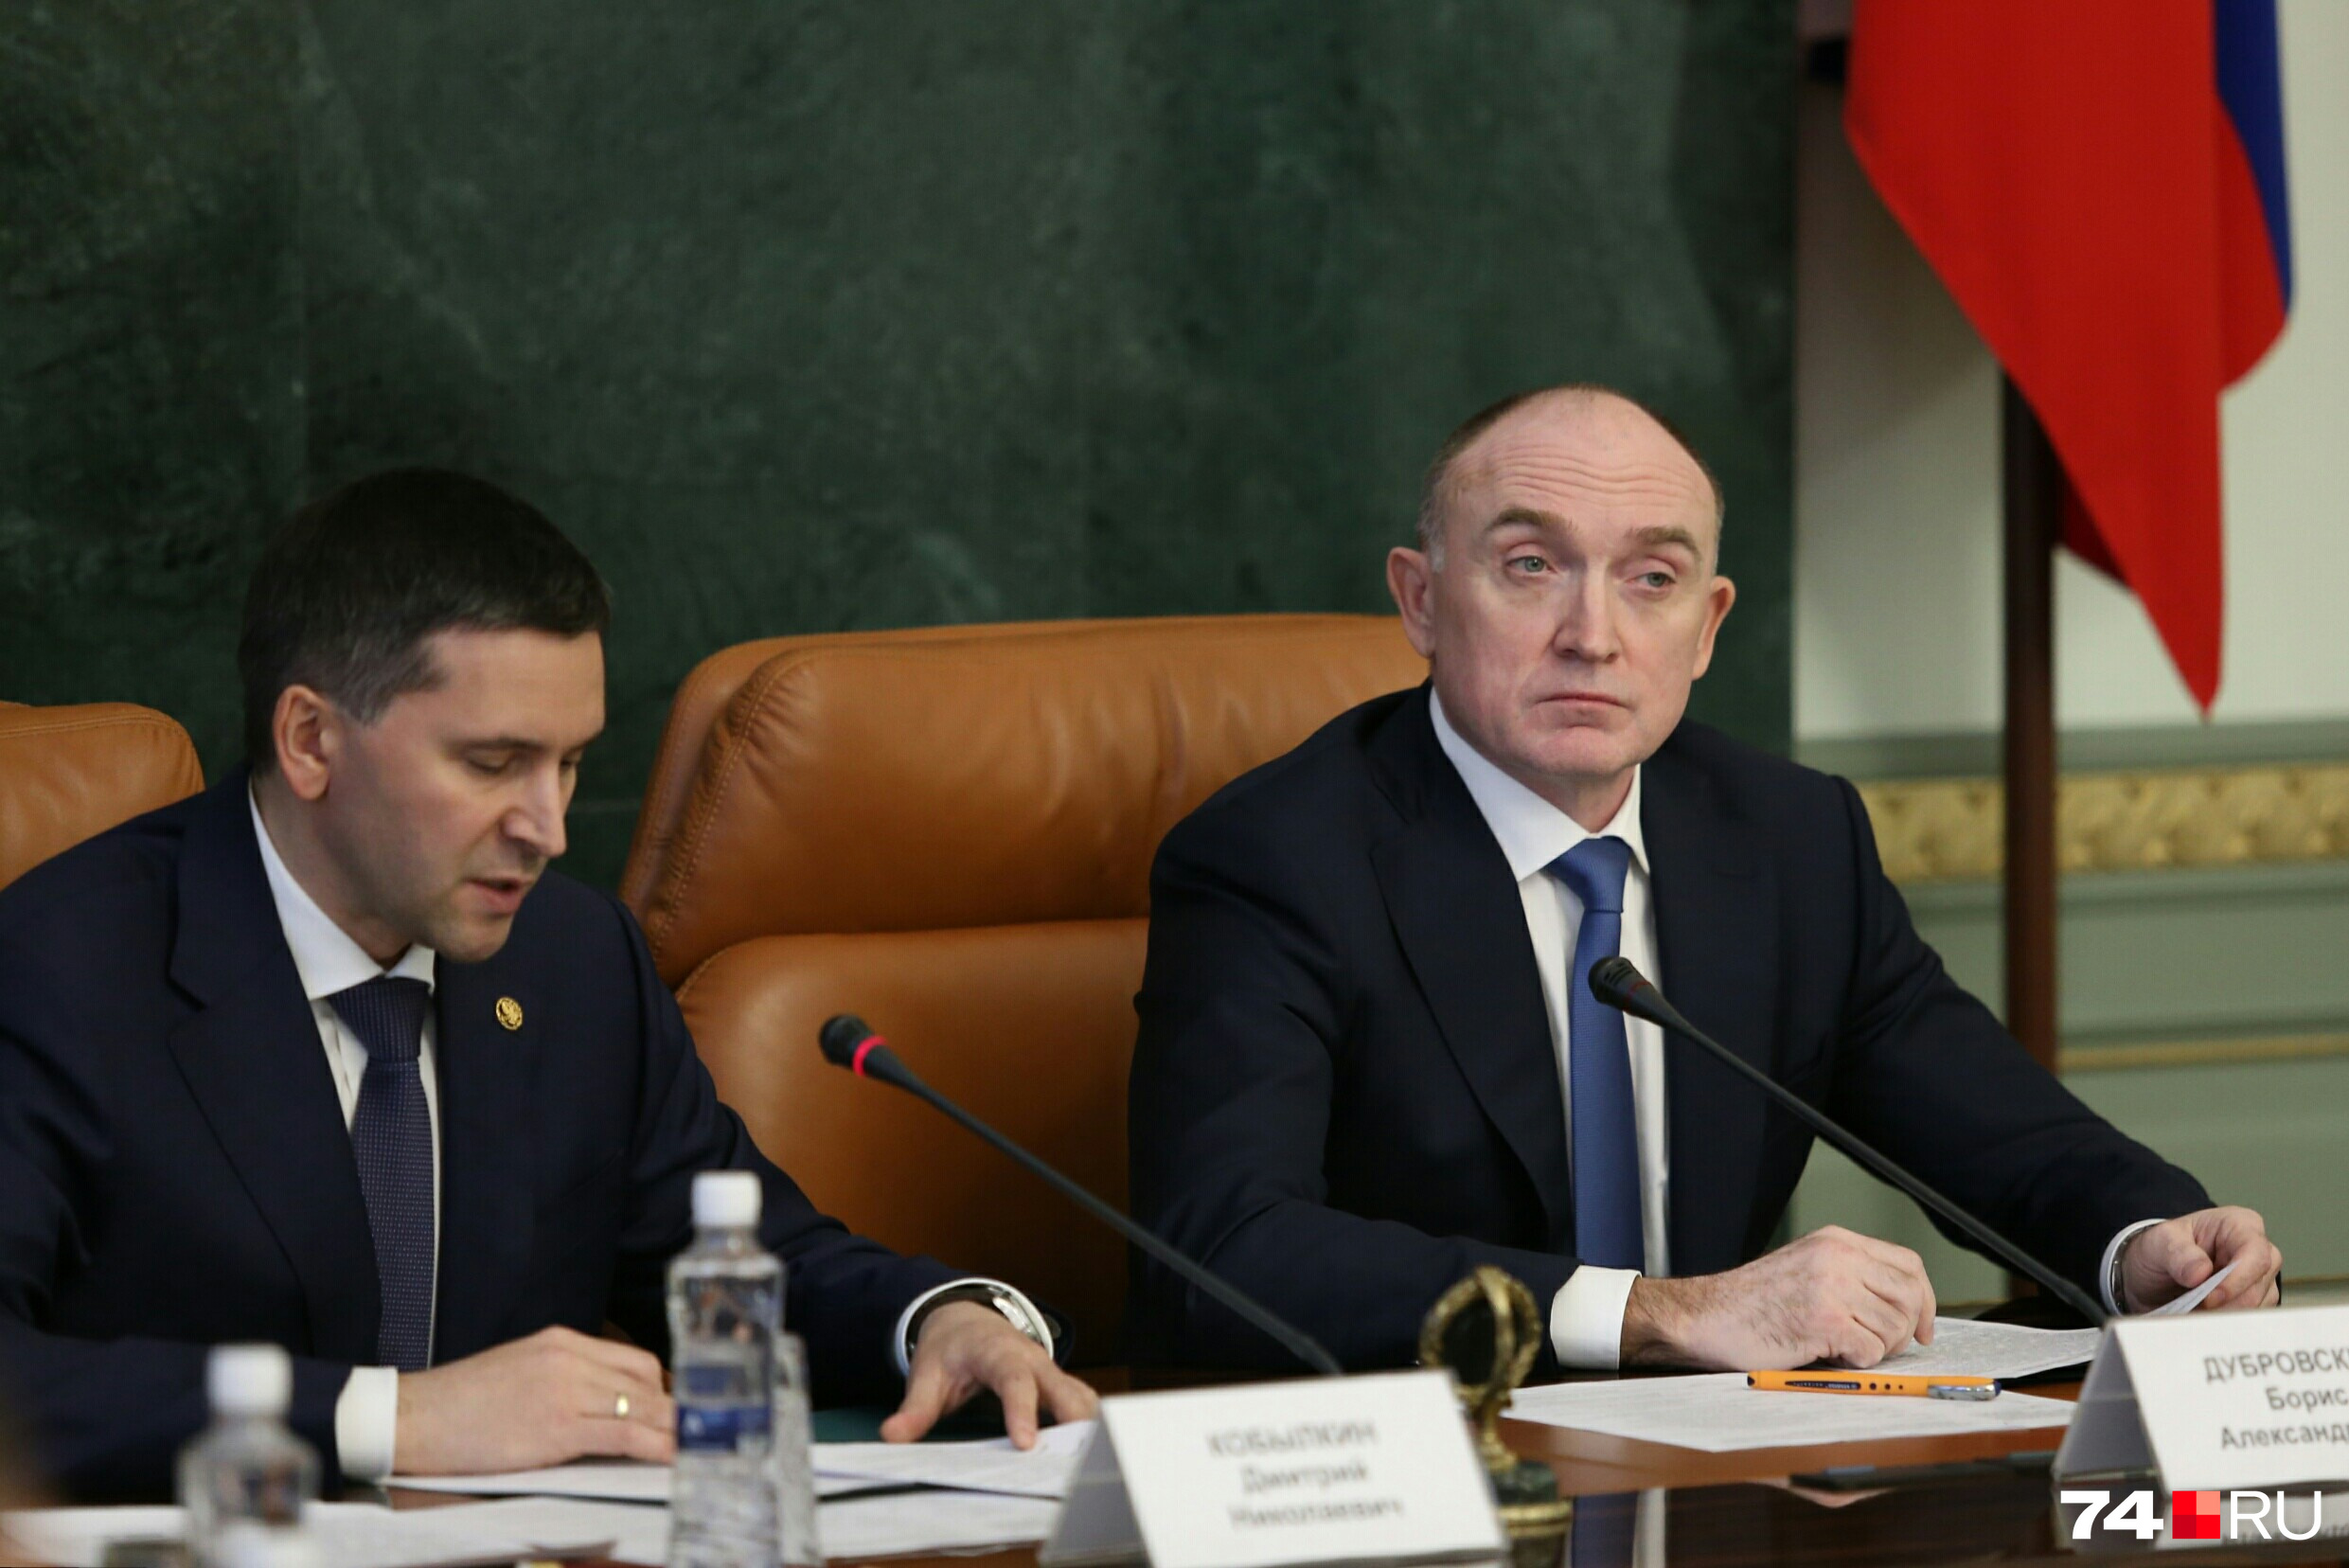 Дмитрий Кобылкин (слева) прочёл свой доклад по бумажке